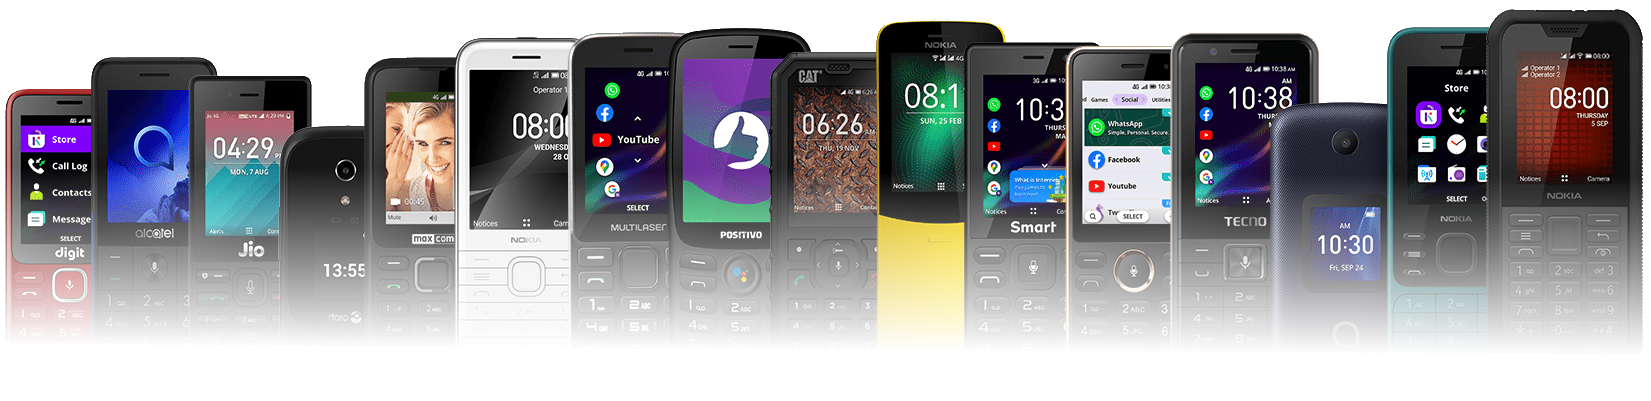 A lineup of various KaiOS phones